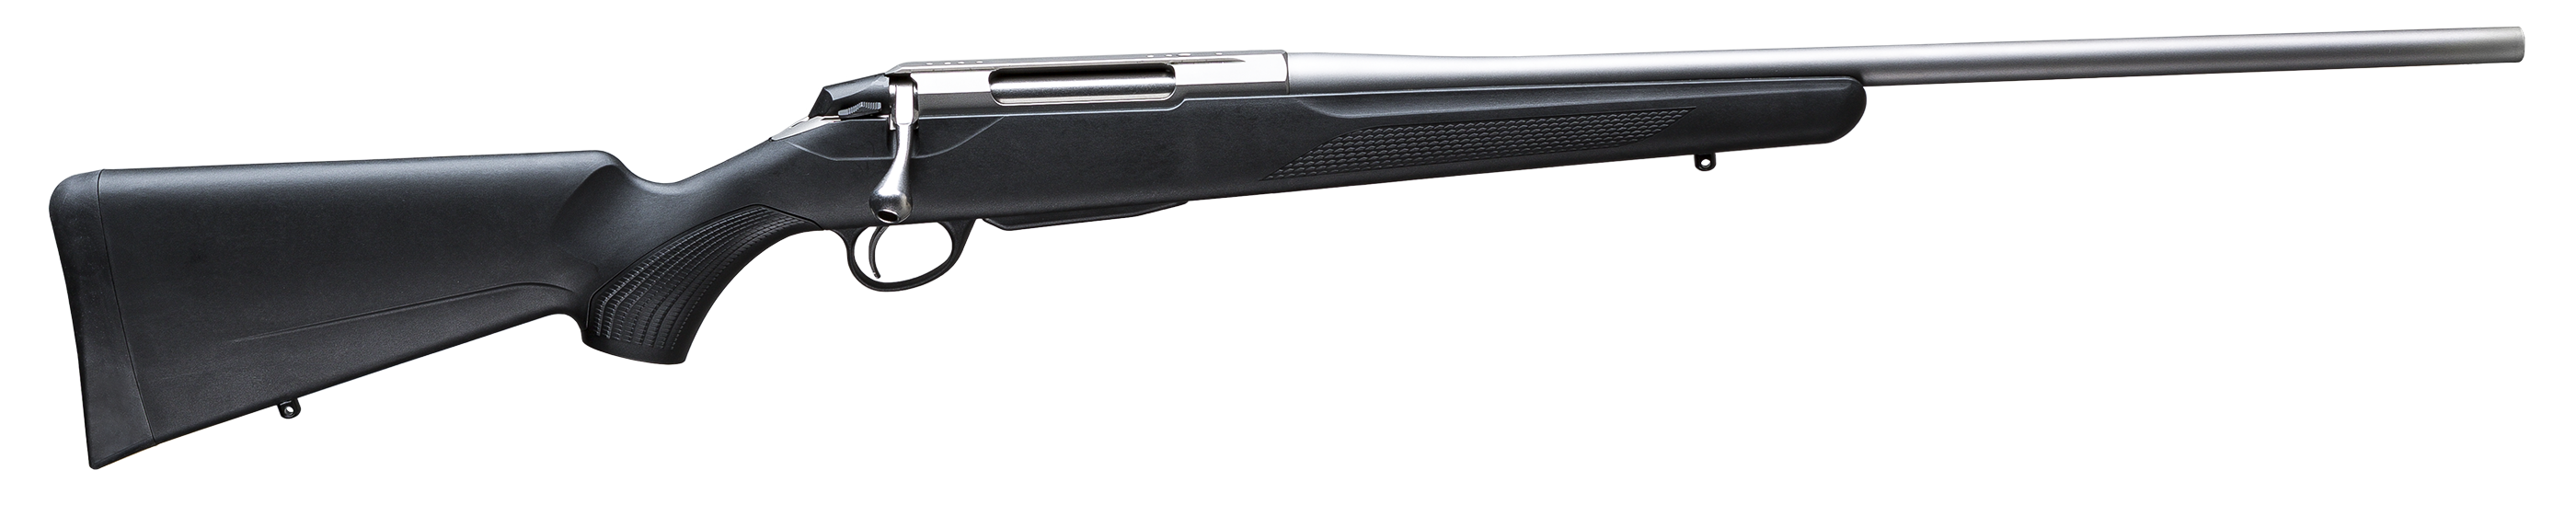 Tikka T3x Lite stainless 6.5 Creedmoor kivääri